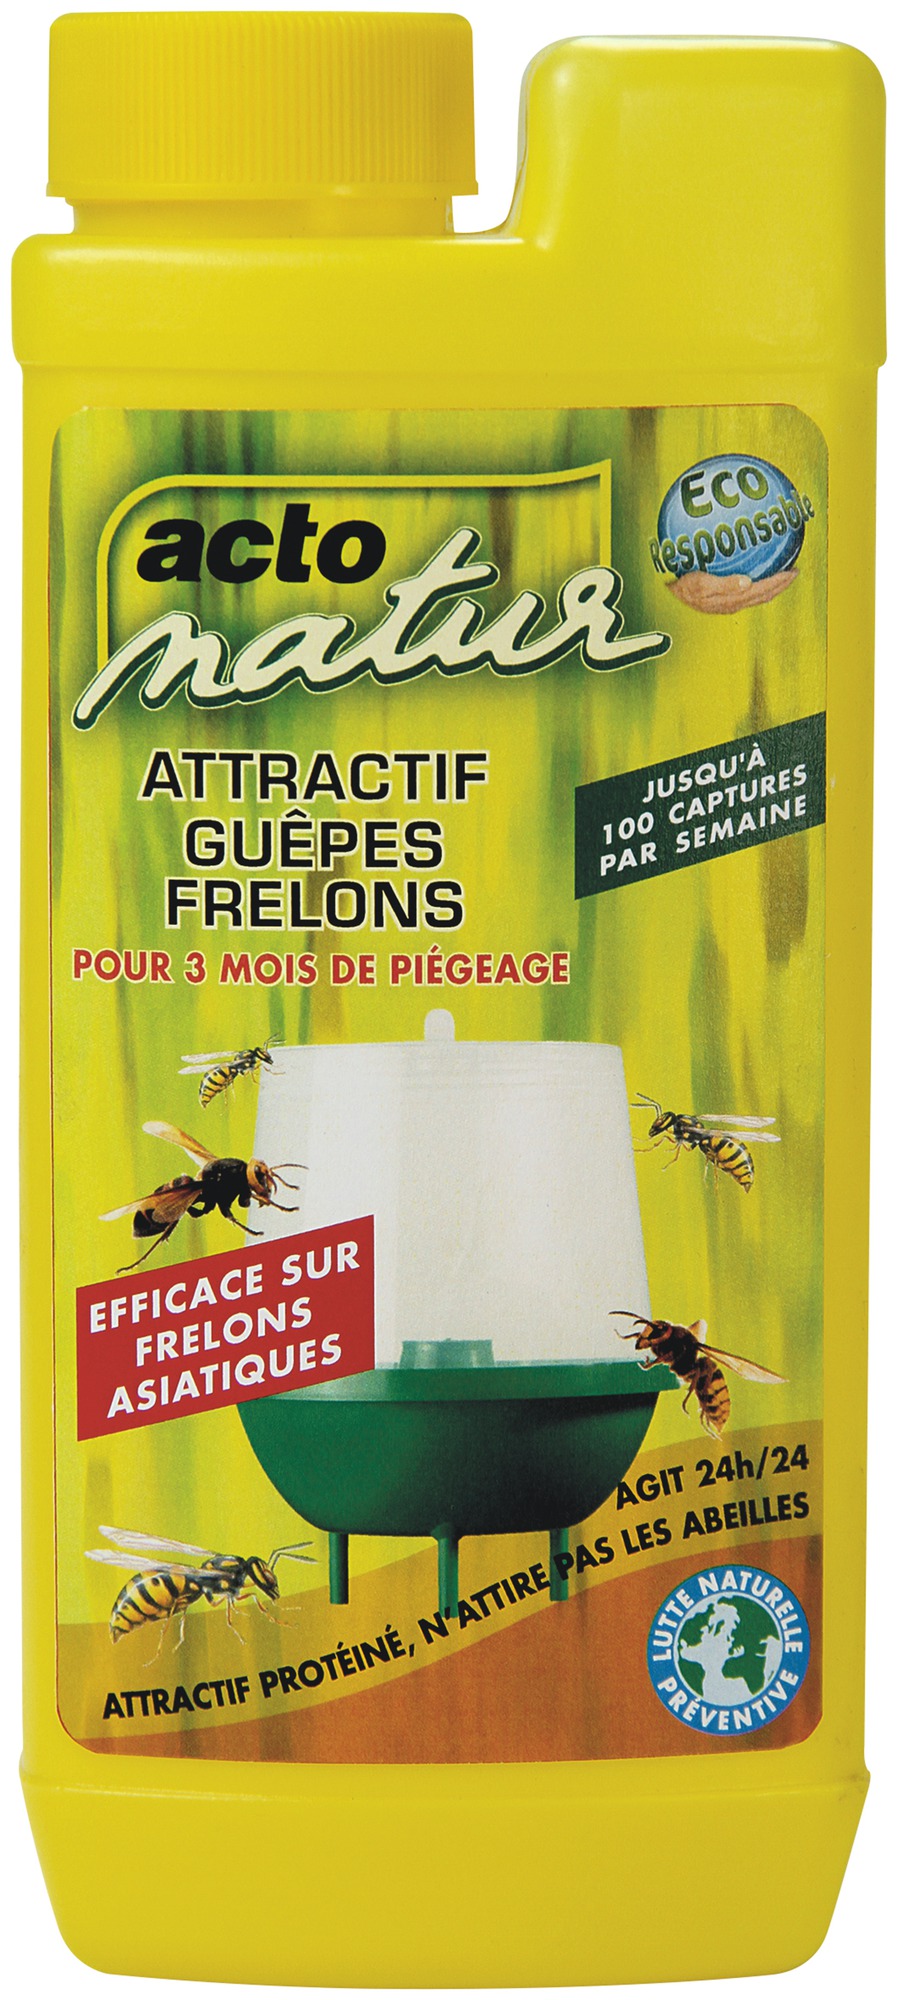 Attractif guêpes frelons pour piège Acto Natur - Bidon 375 g